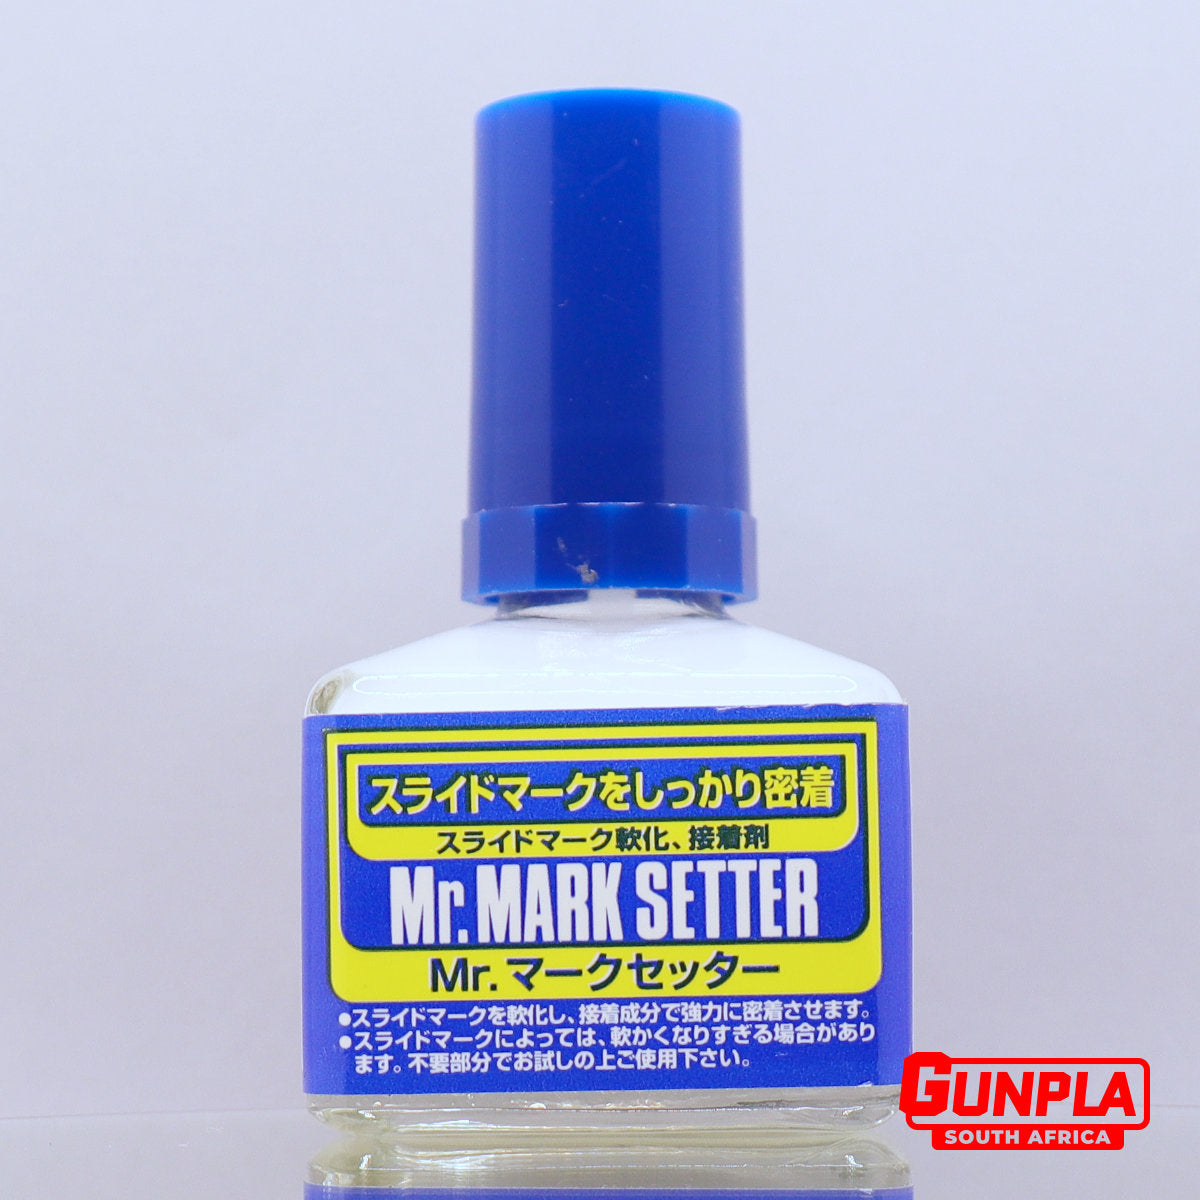 Mr. MARK SETTER — GUNPLA SA